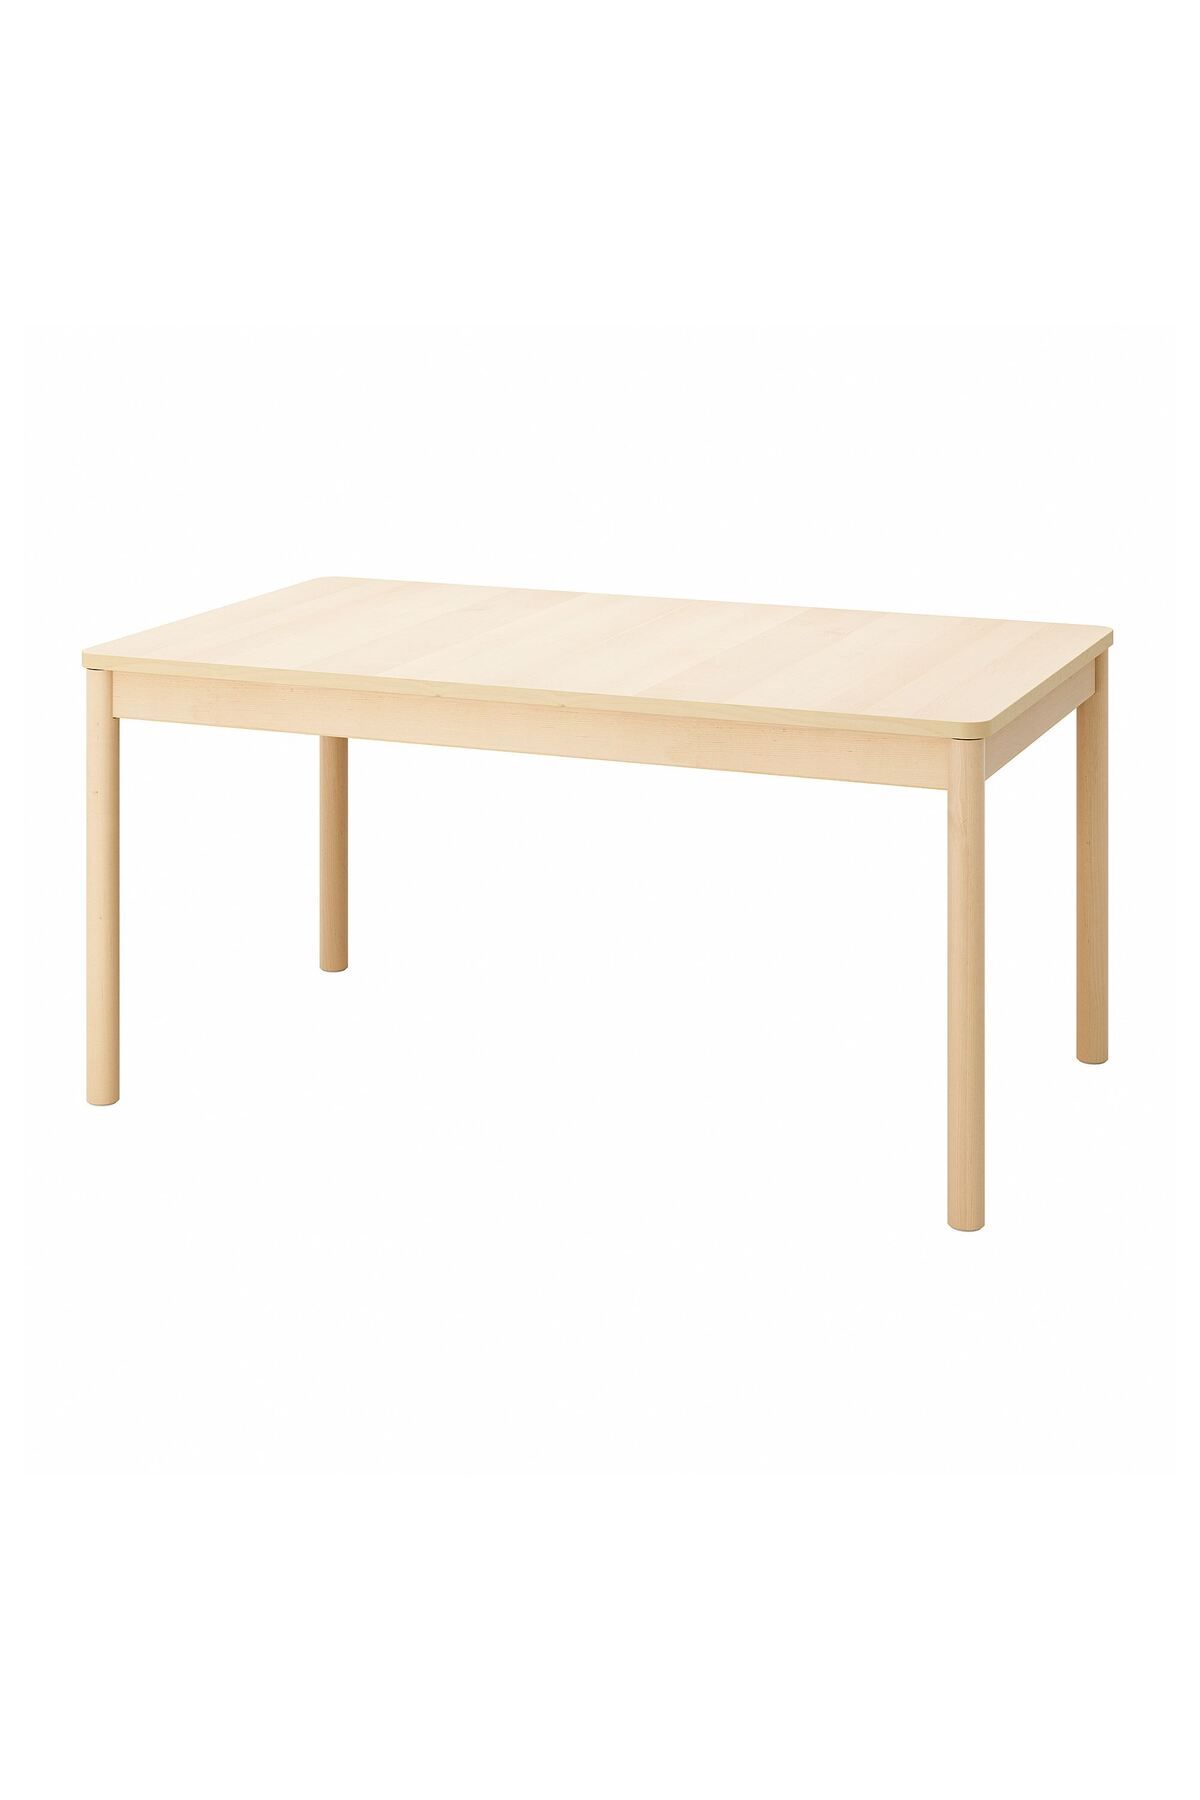 IKEA açılır yemek masası, huş, 4-8 kişilik, açılabilir, 155/210x90x75 cm